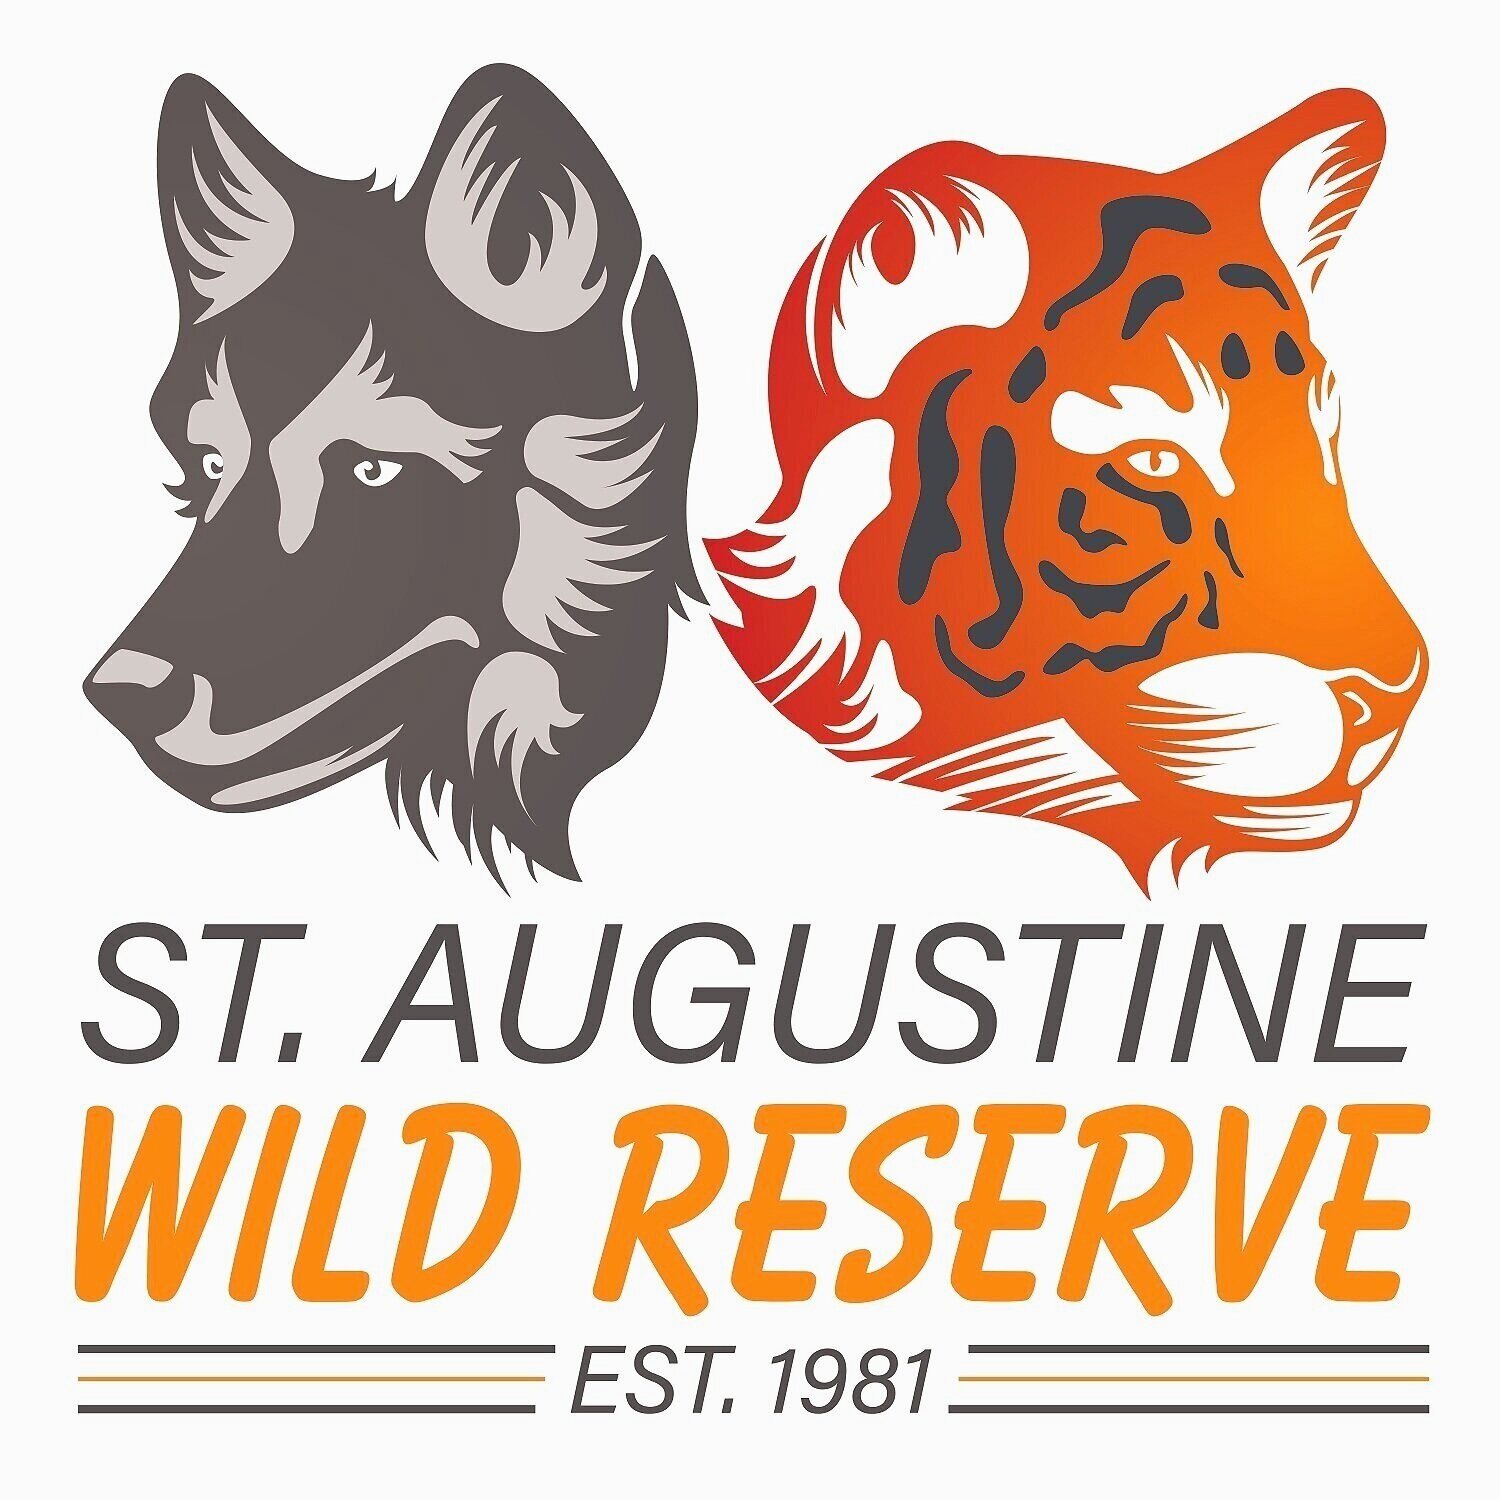 St. Augustine Wild Reserve